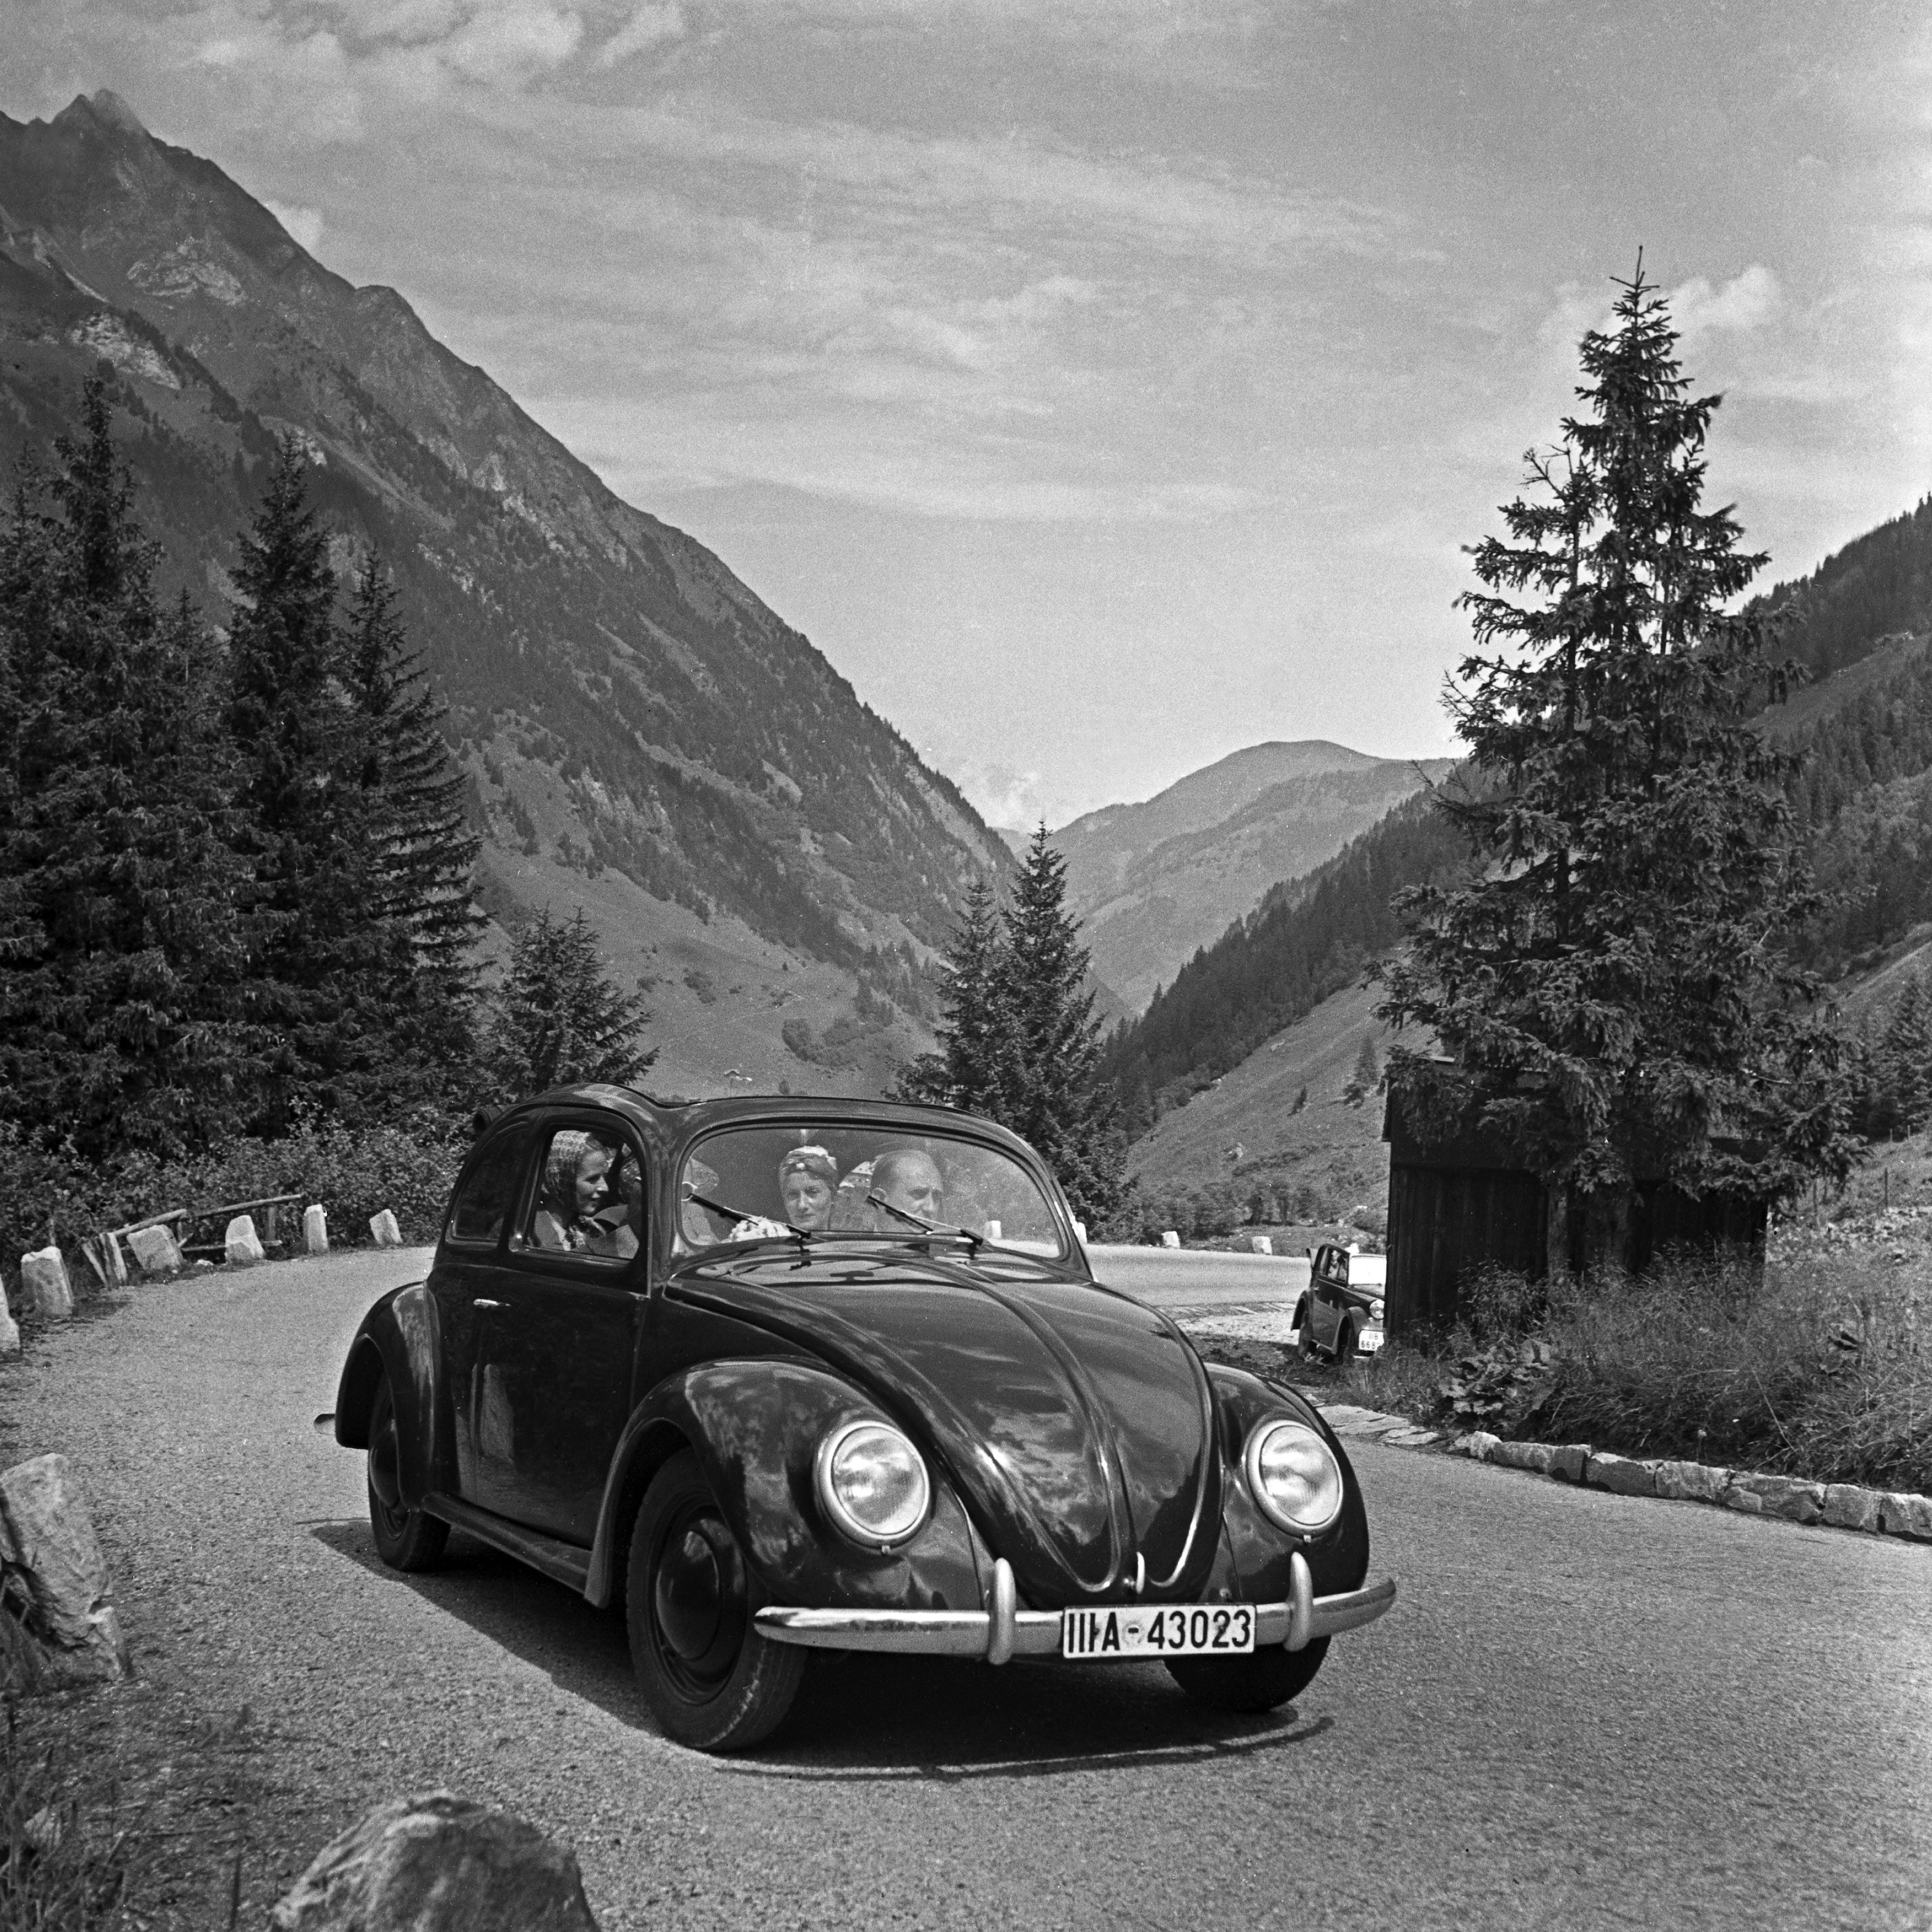 Karl Heinrich Lämmel Black and White Photograph – Erkunden Sie die Landschaft in einem Volkswagen-Käfer, Deutschland 1939 Später gedruckt